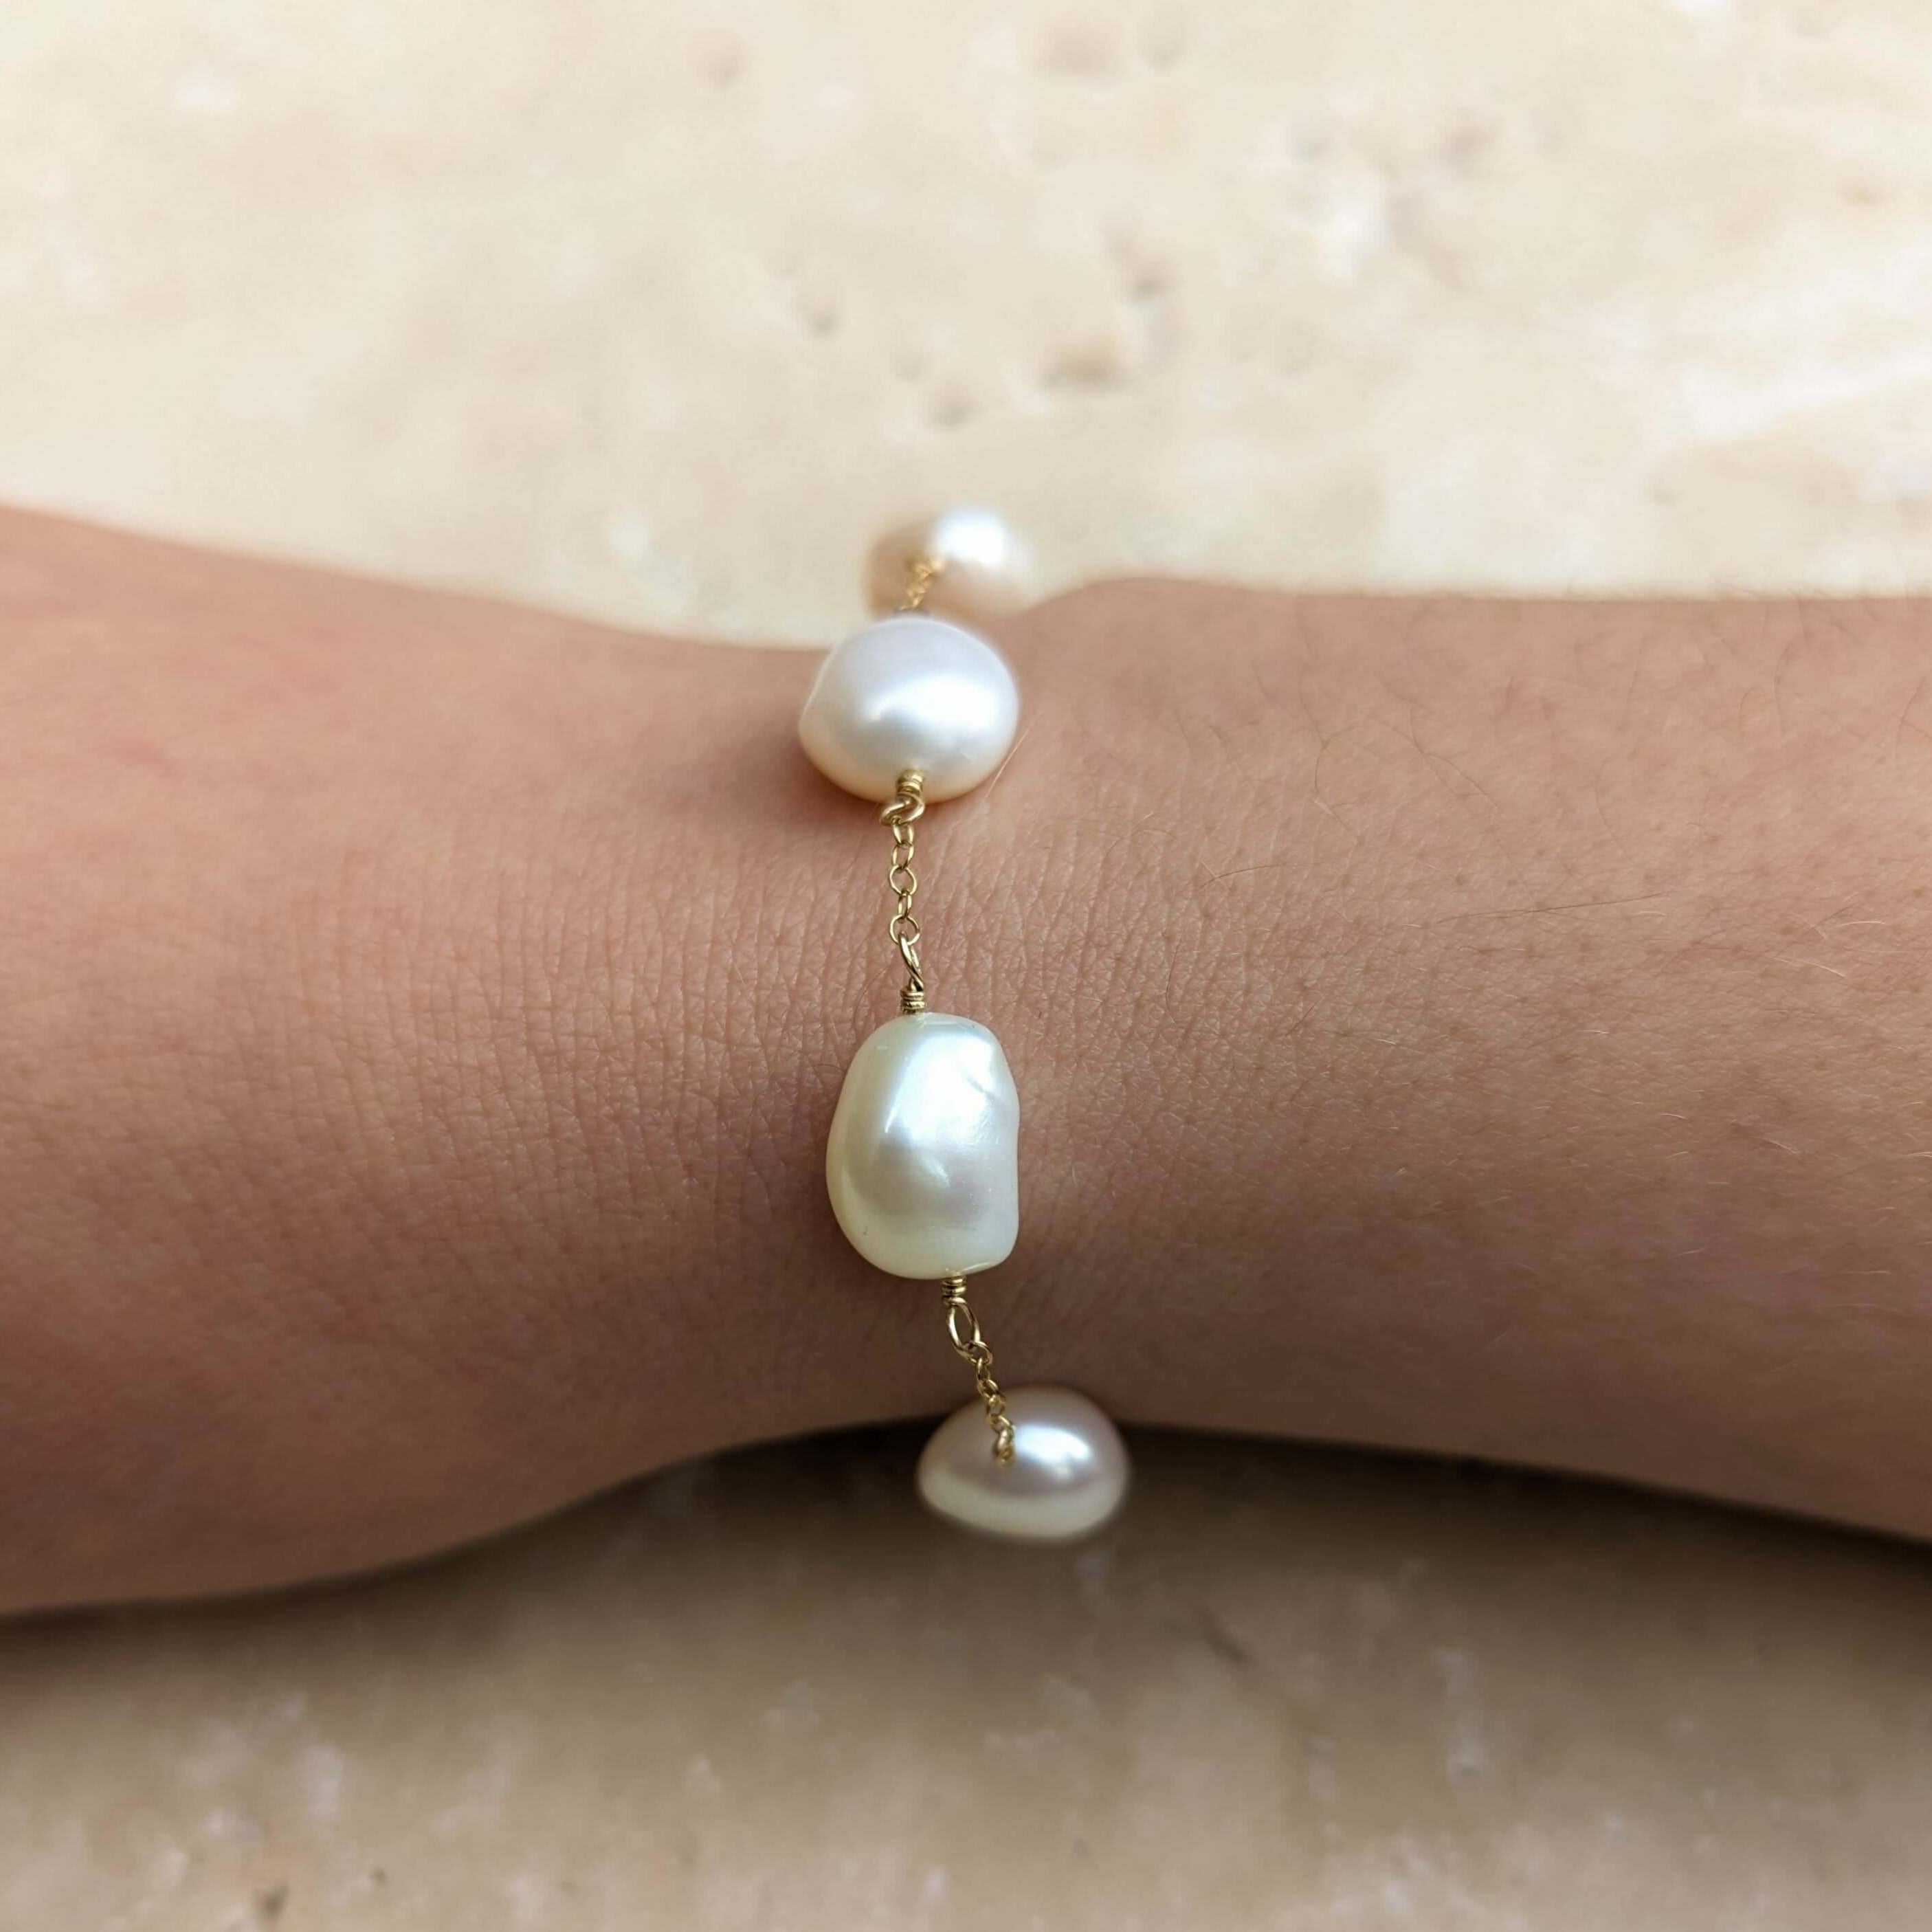 Pearl chain bracelet on model wrist in gold filled